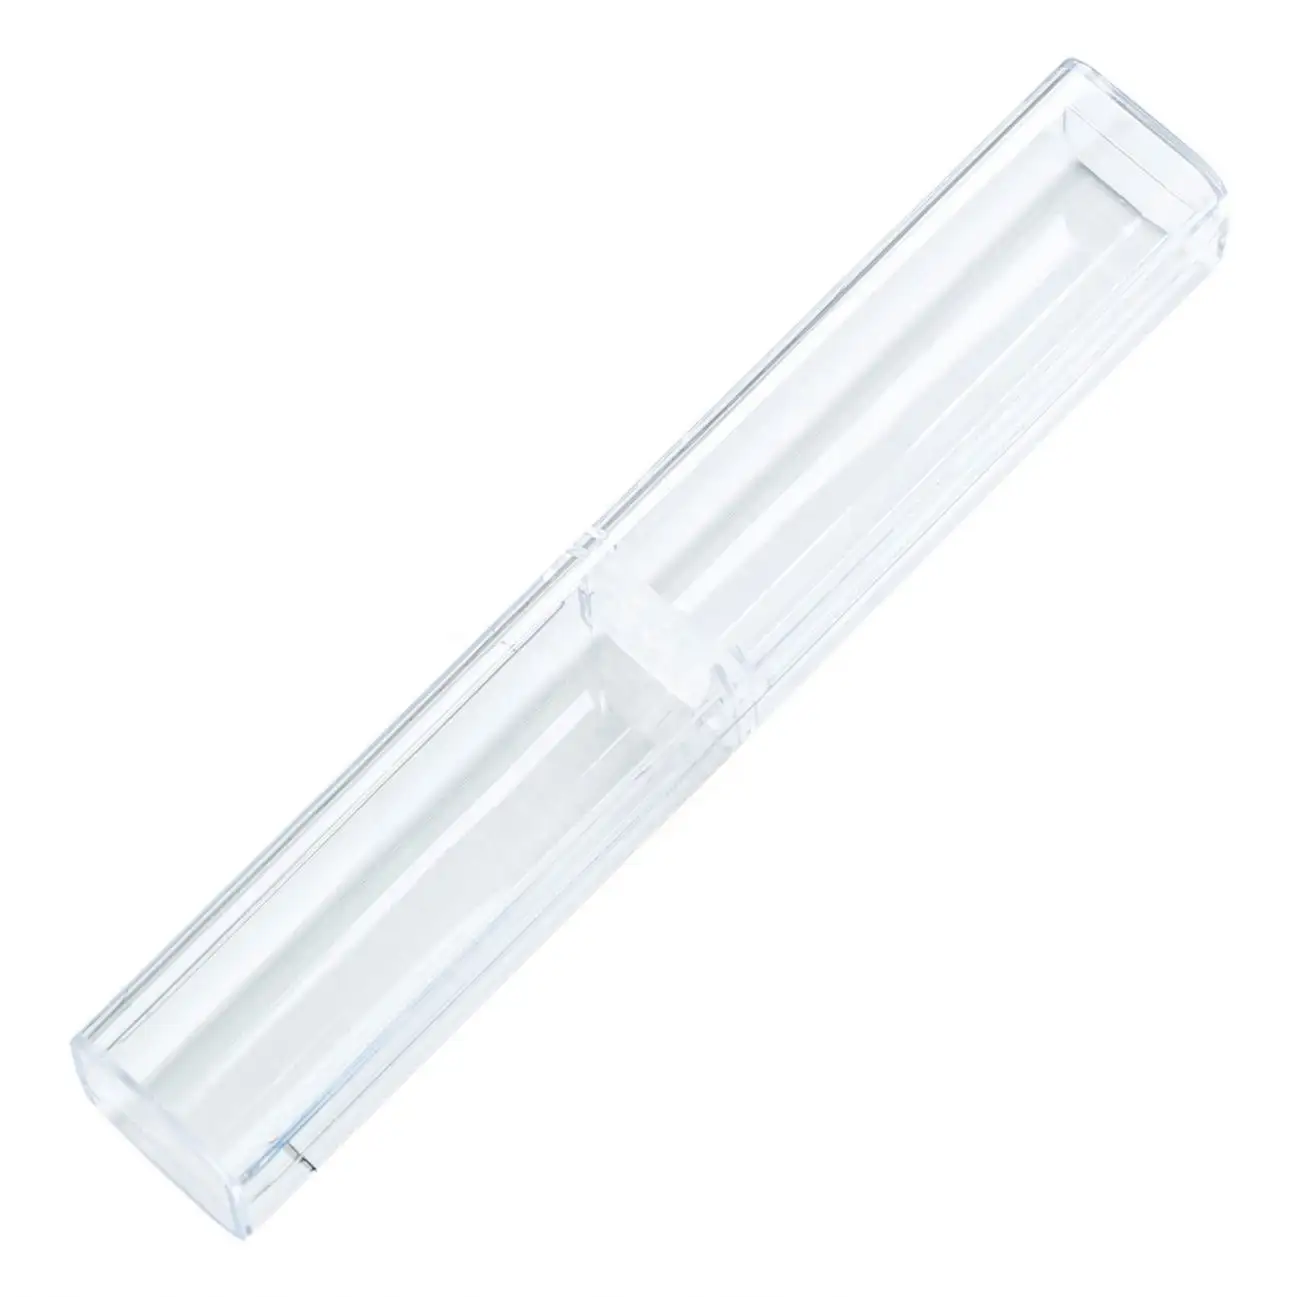 높은 품질 도매 사용자 정의 빈 펜 연필 플라스틱 케이스 포장 상자 선물 투명 작은 플라스틱 케이스 펜